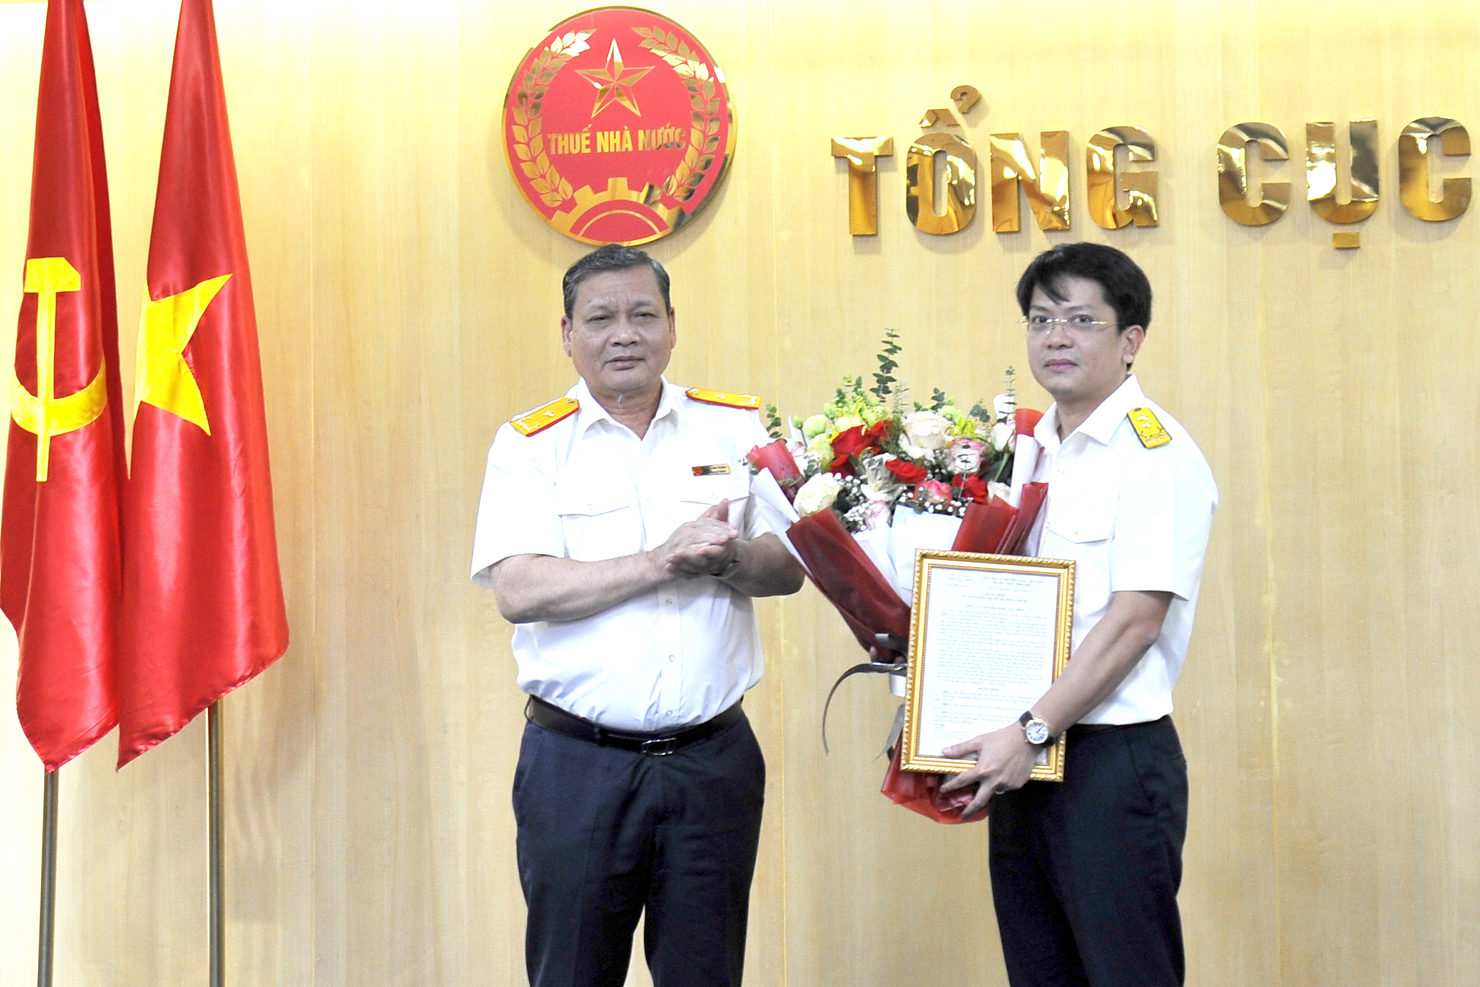 Phó Tổng cục trưởng Phi Vân Tuấn trao Quyết định bổ nhiệm Phó Chánh Văn phòng cho ông Nguyễn Tiến Quỳnh. Ảnh: TCT.